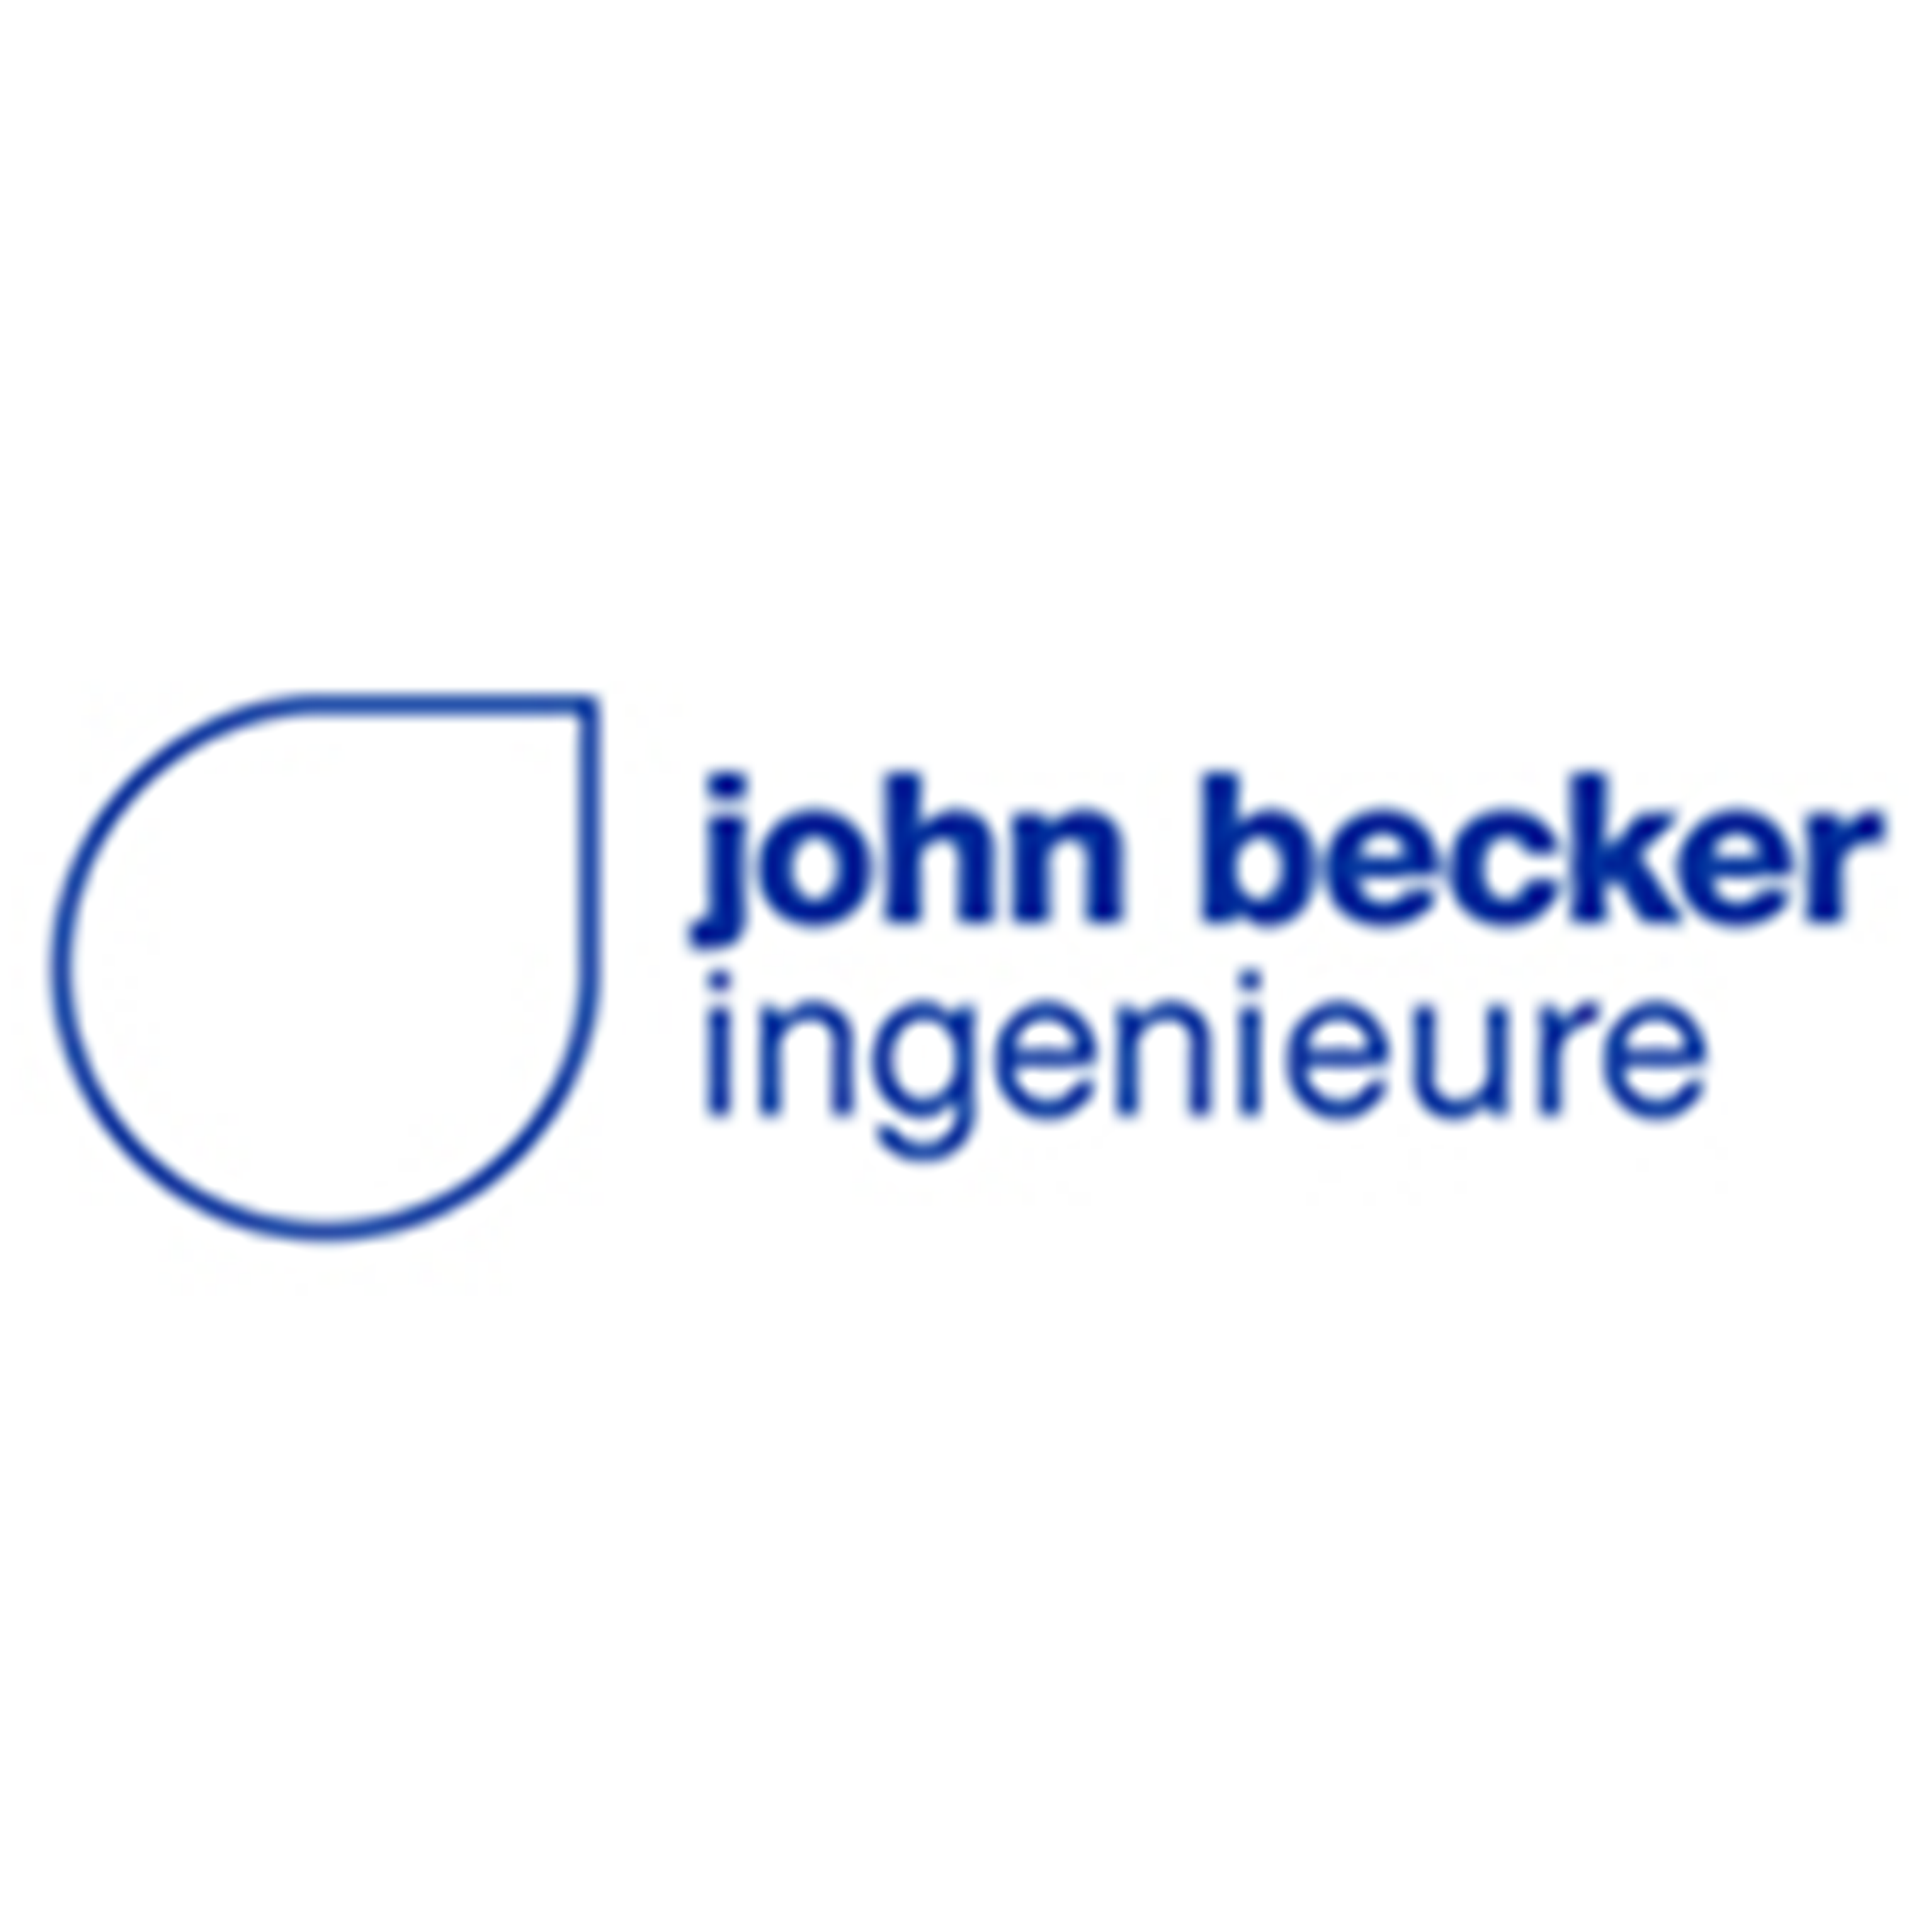 john becker ingenieure GmbH und Co. KG